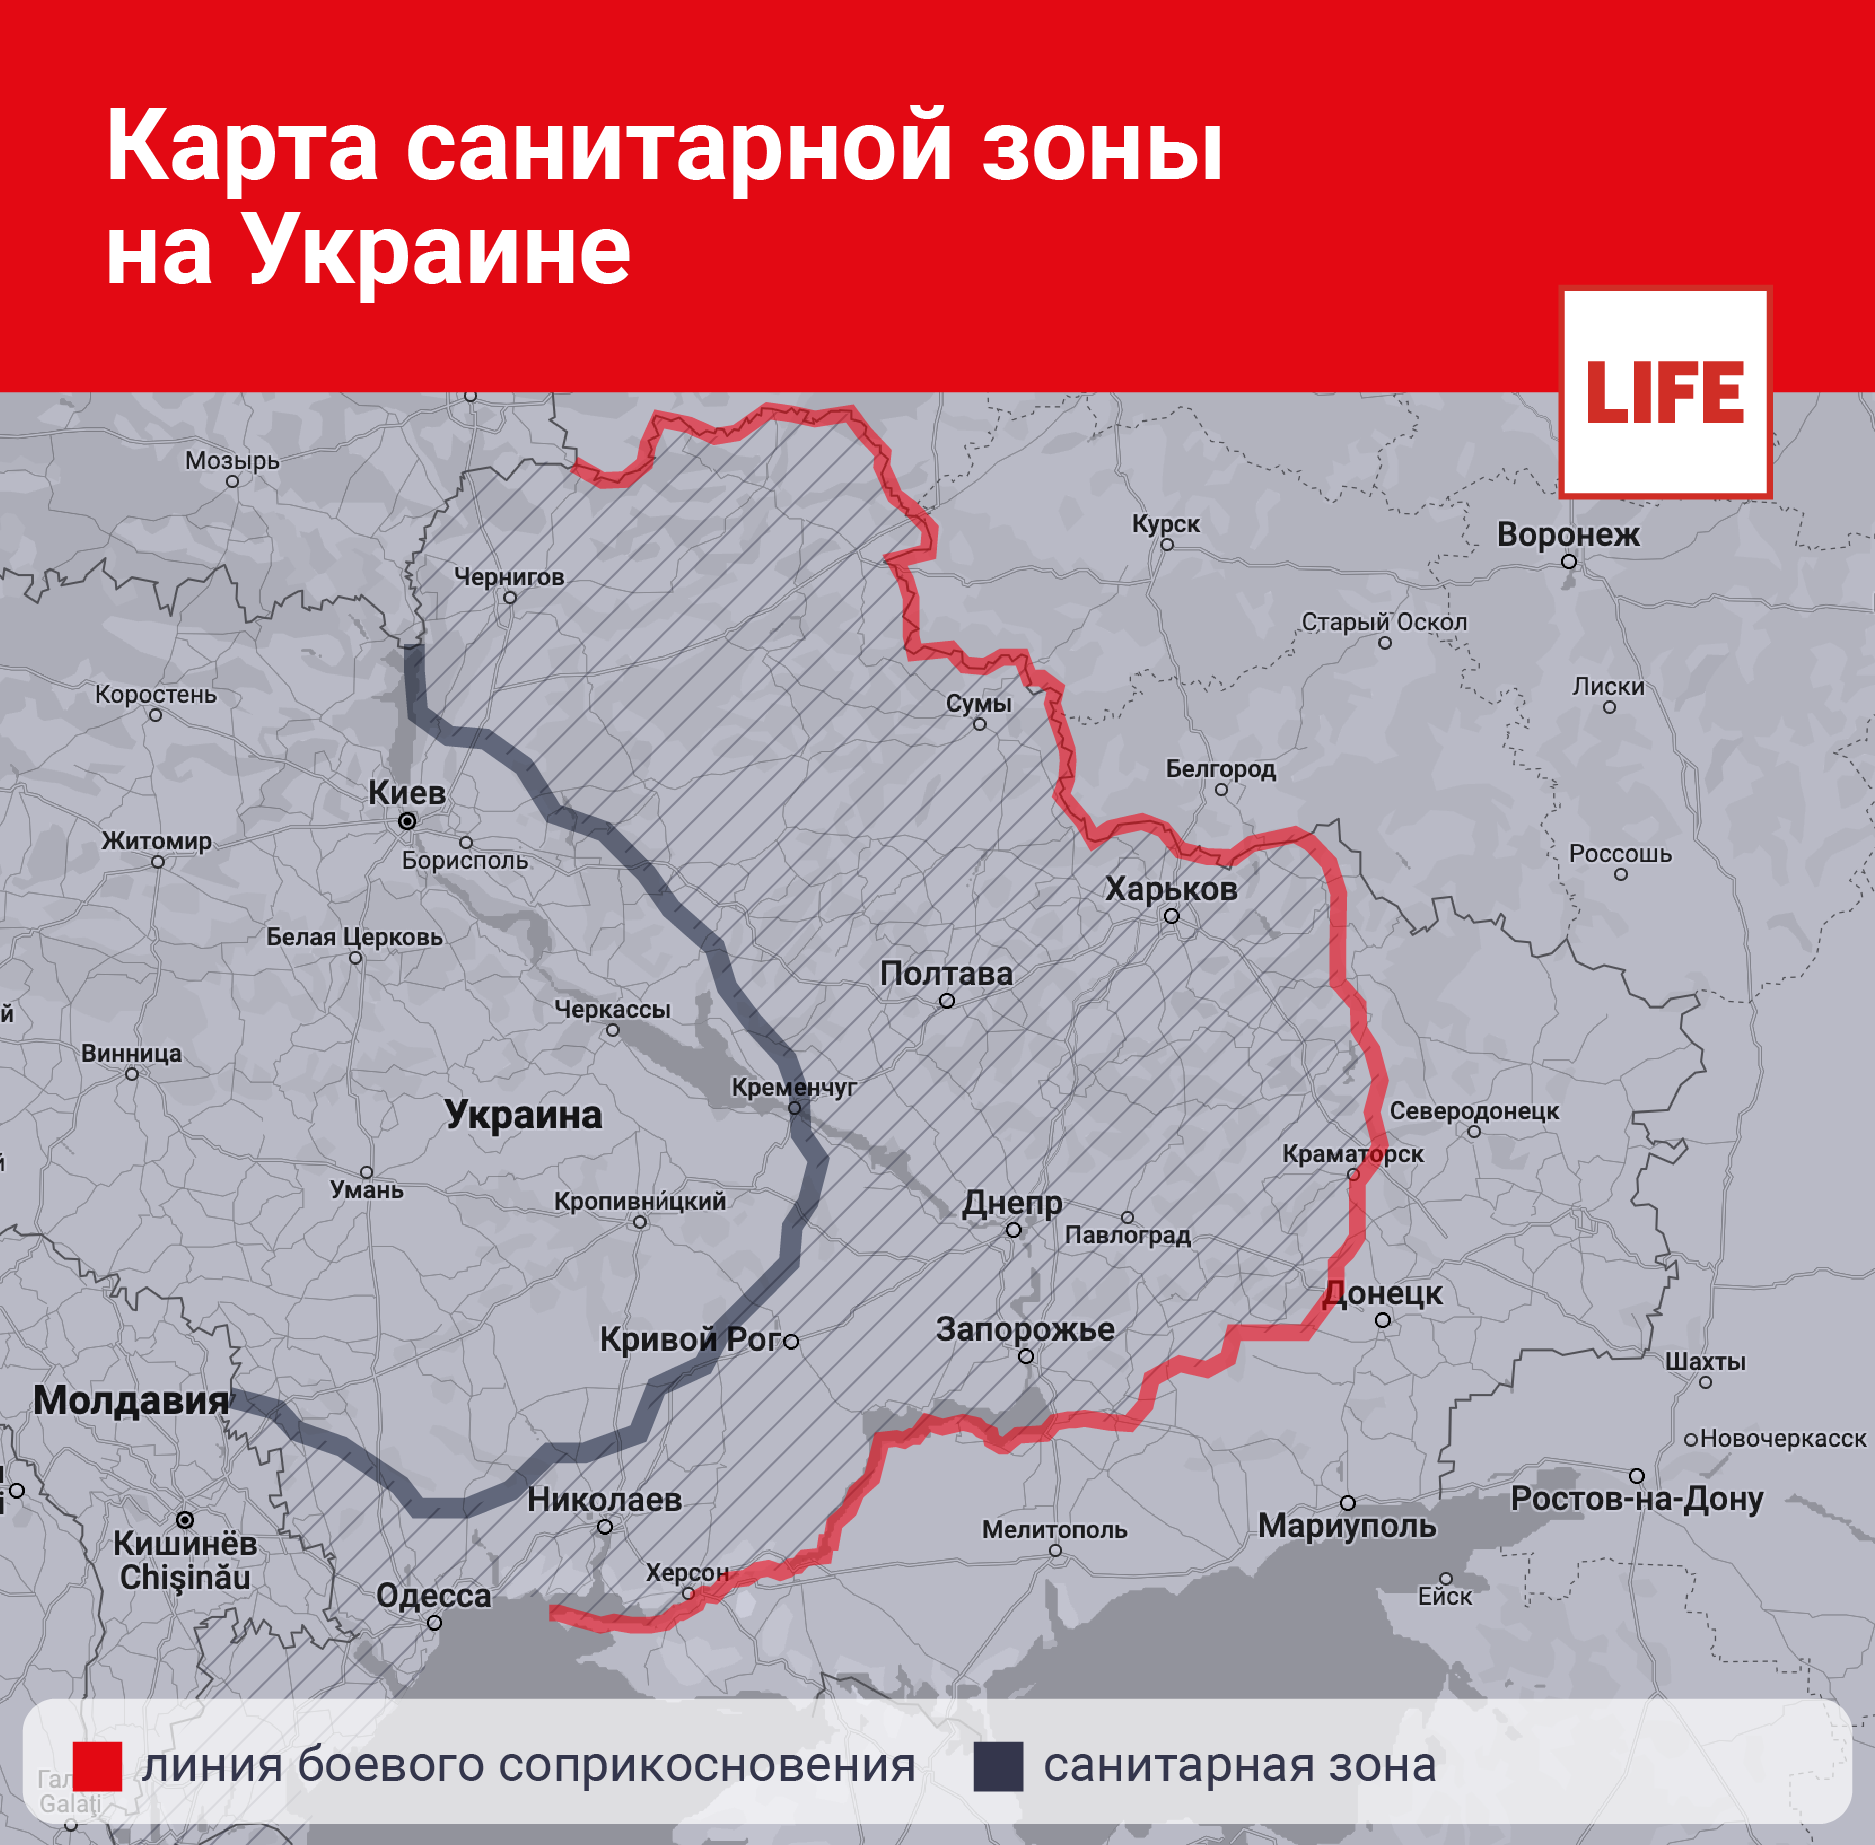 ДОН24 - Медведев рассказал, какой должна быть «санитарная зона» на картеУкраины